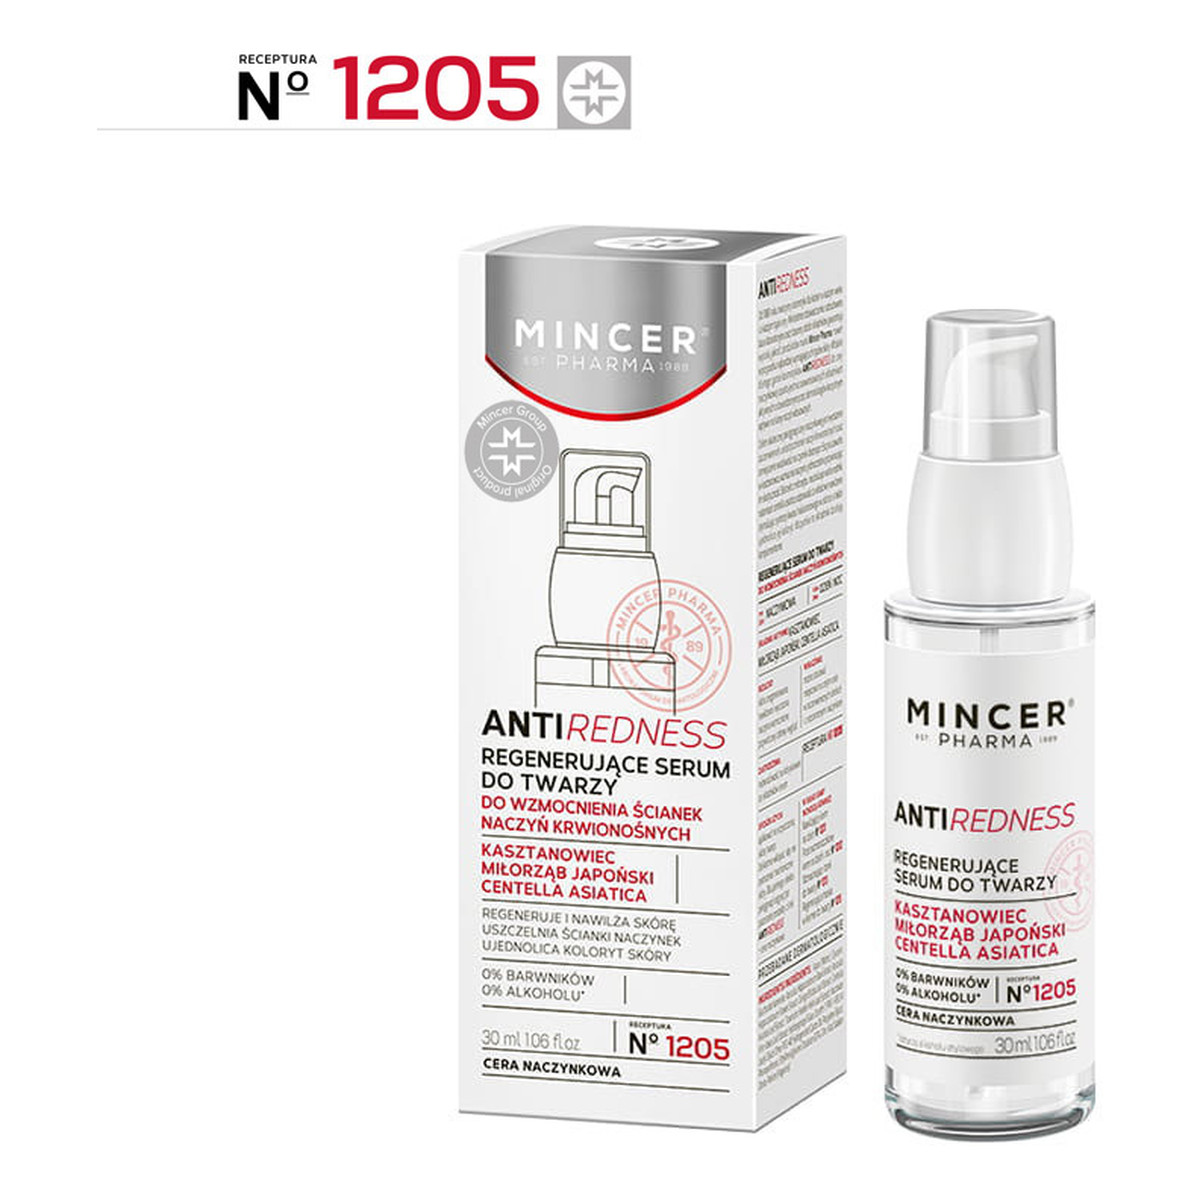 Mincer Pharma Anti Redness Regenerujące serum do twarzy 1205 30ml